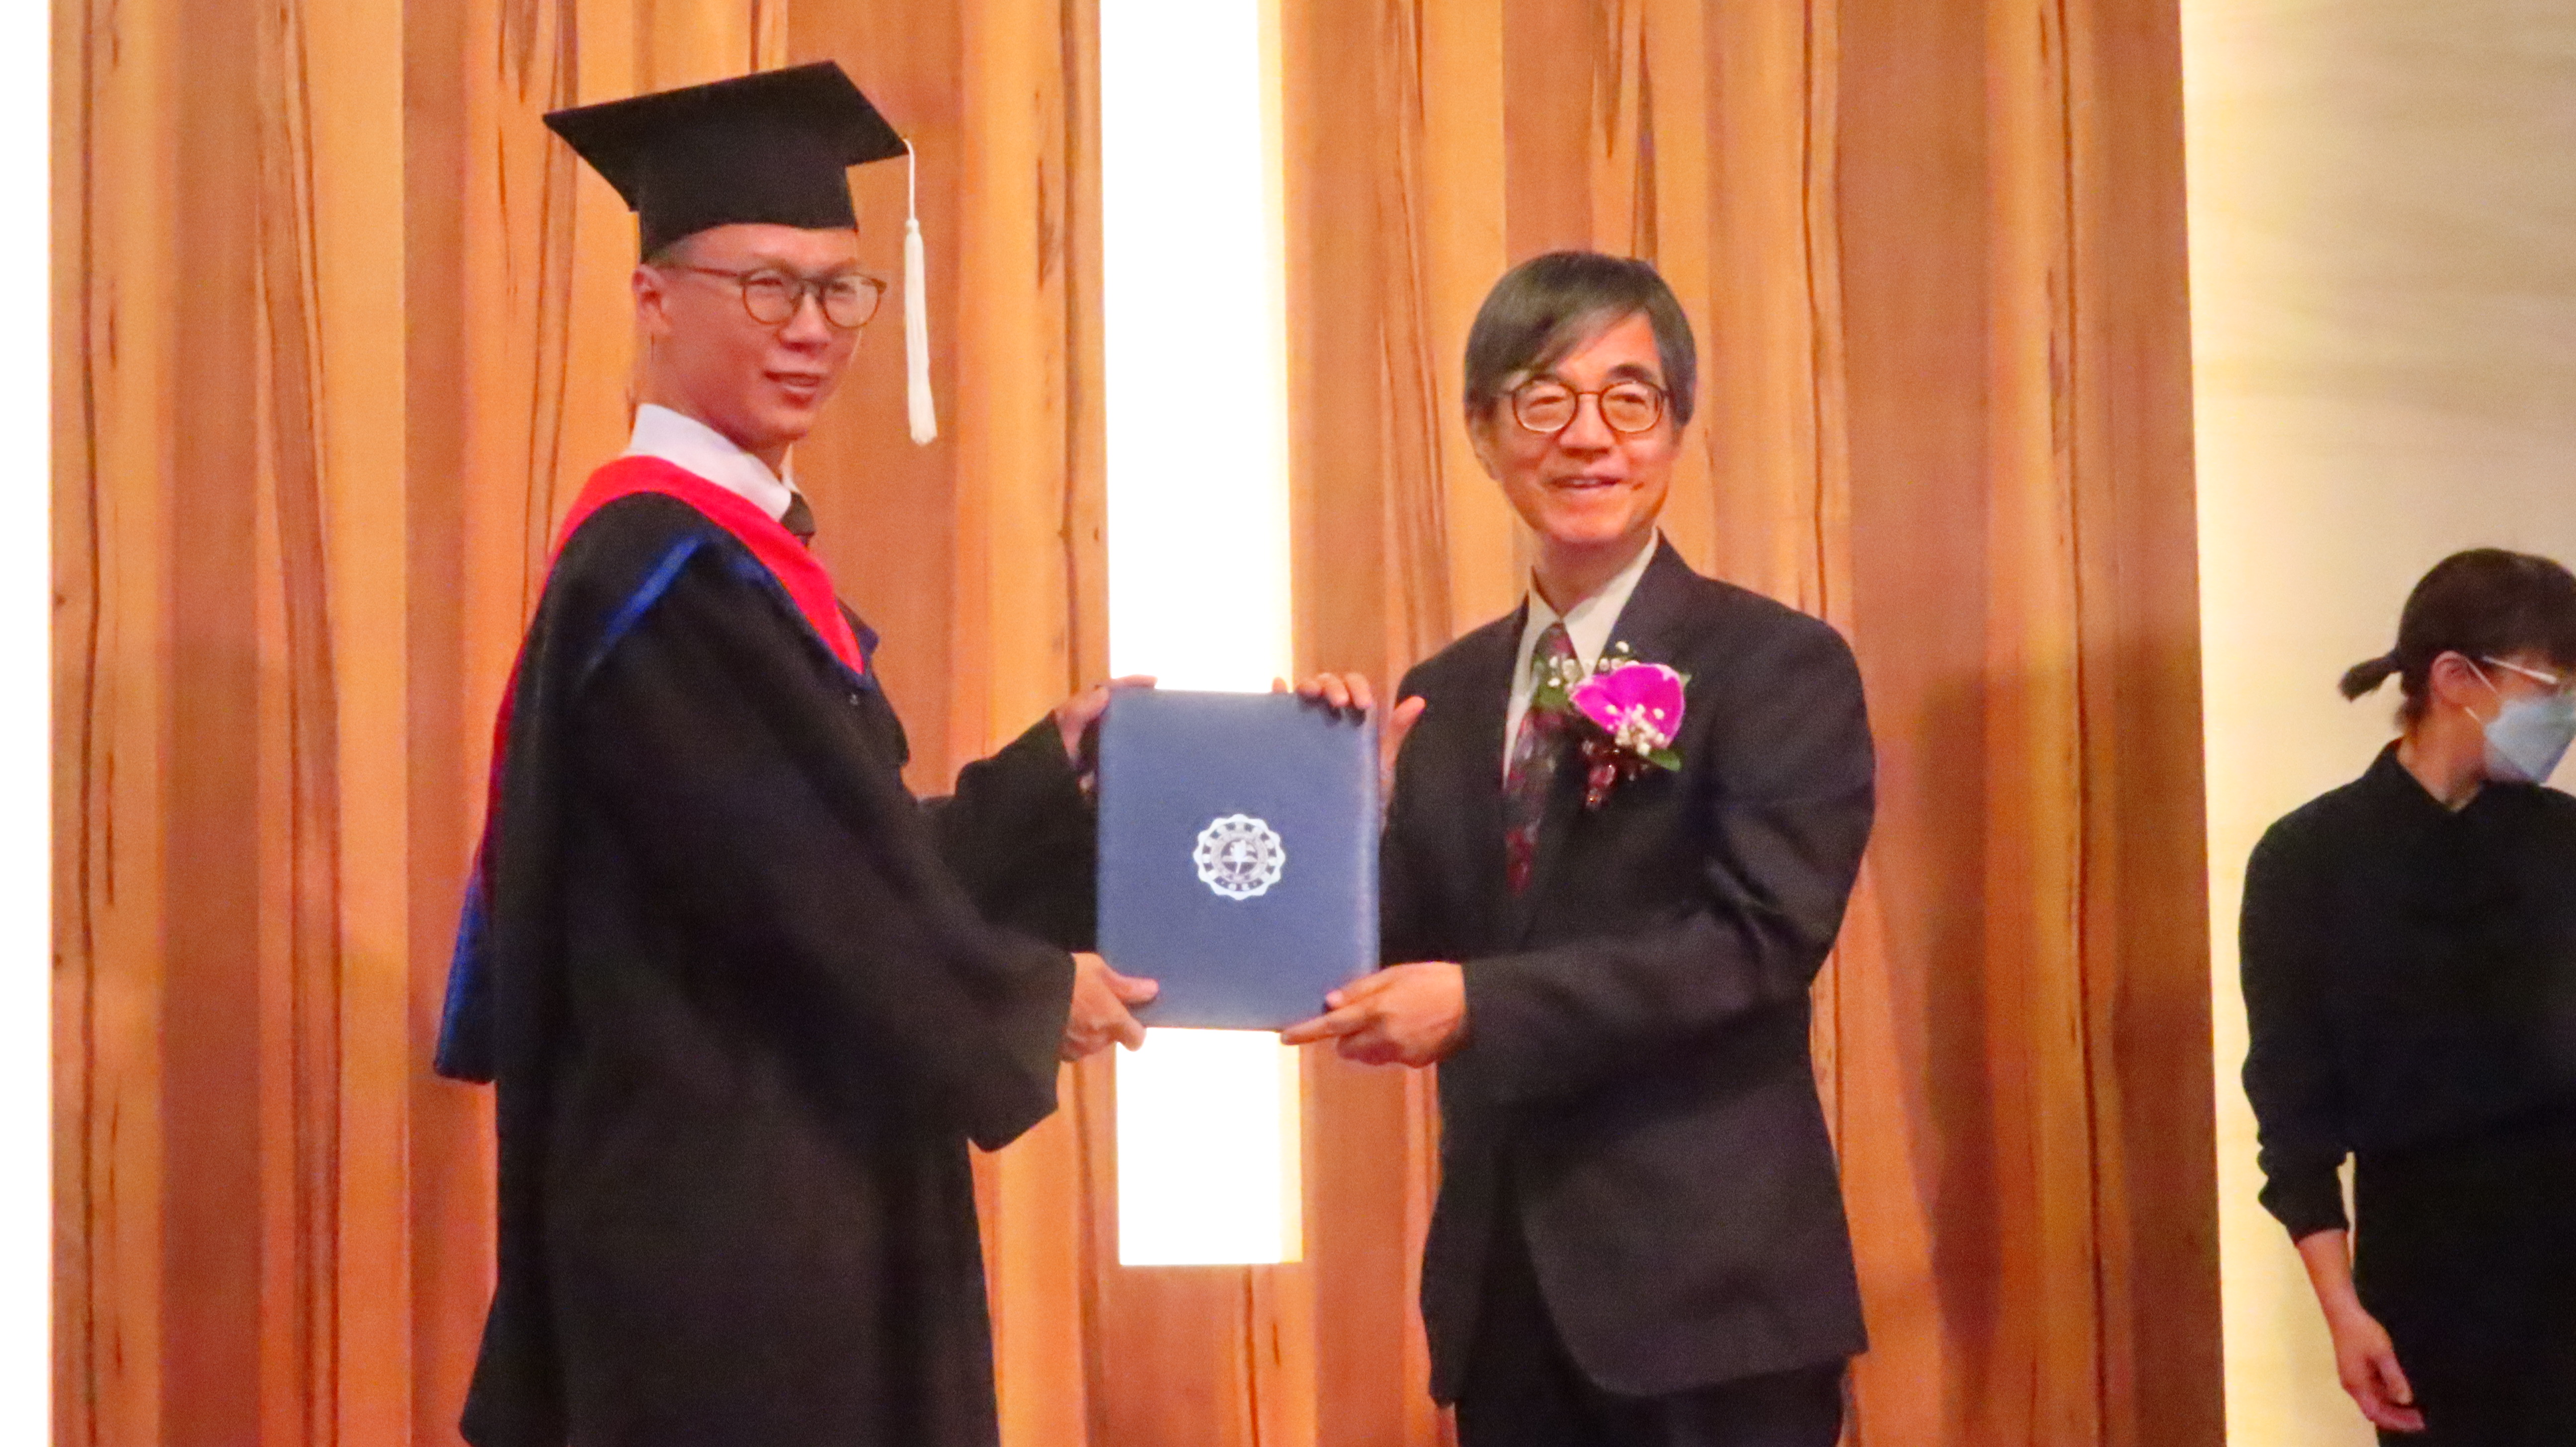 謝宏忠院長頒發畢業證書給畢業生致詞代表劉必旭。（梁敬彥攝影）